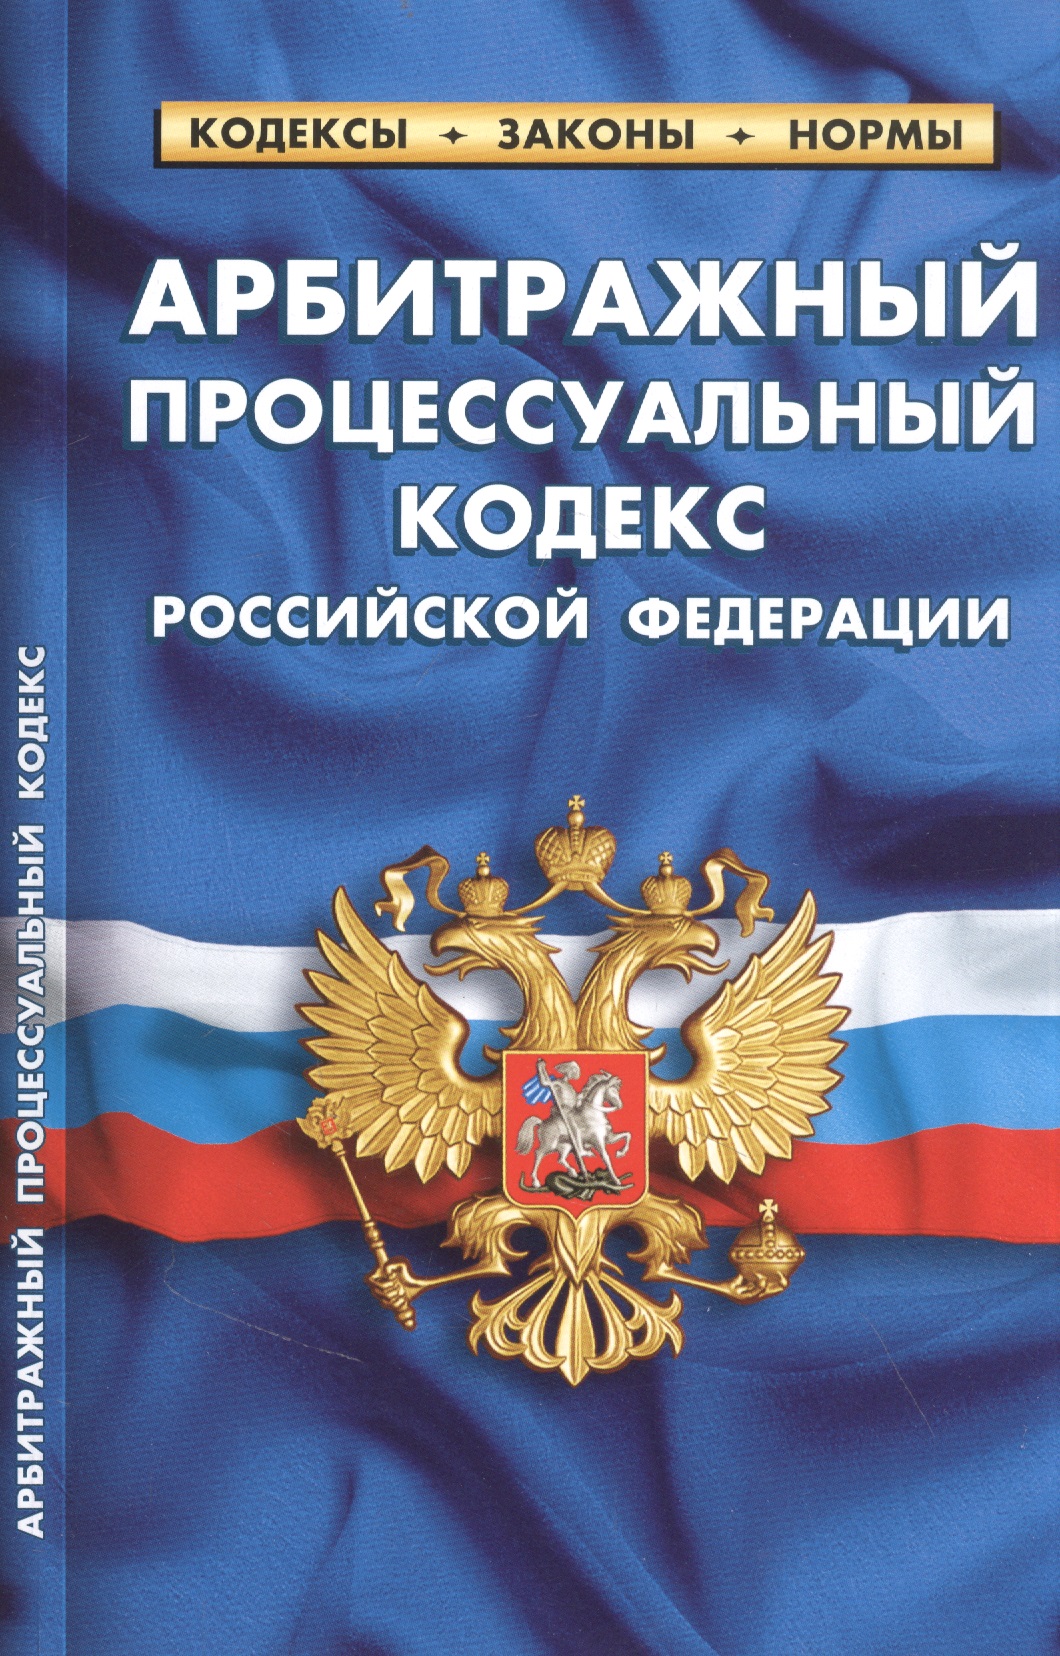  - Арбитражный процессуальный кодекс Российской Федерации (по состоянию на 25 сентября 2022 года